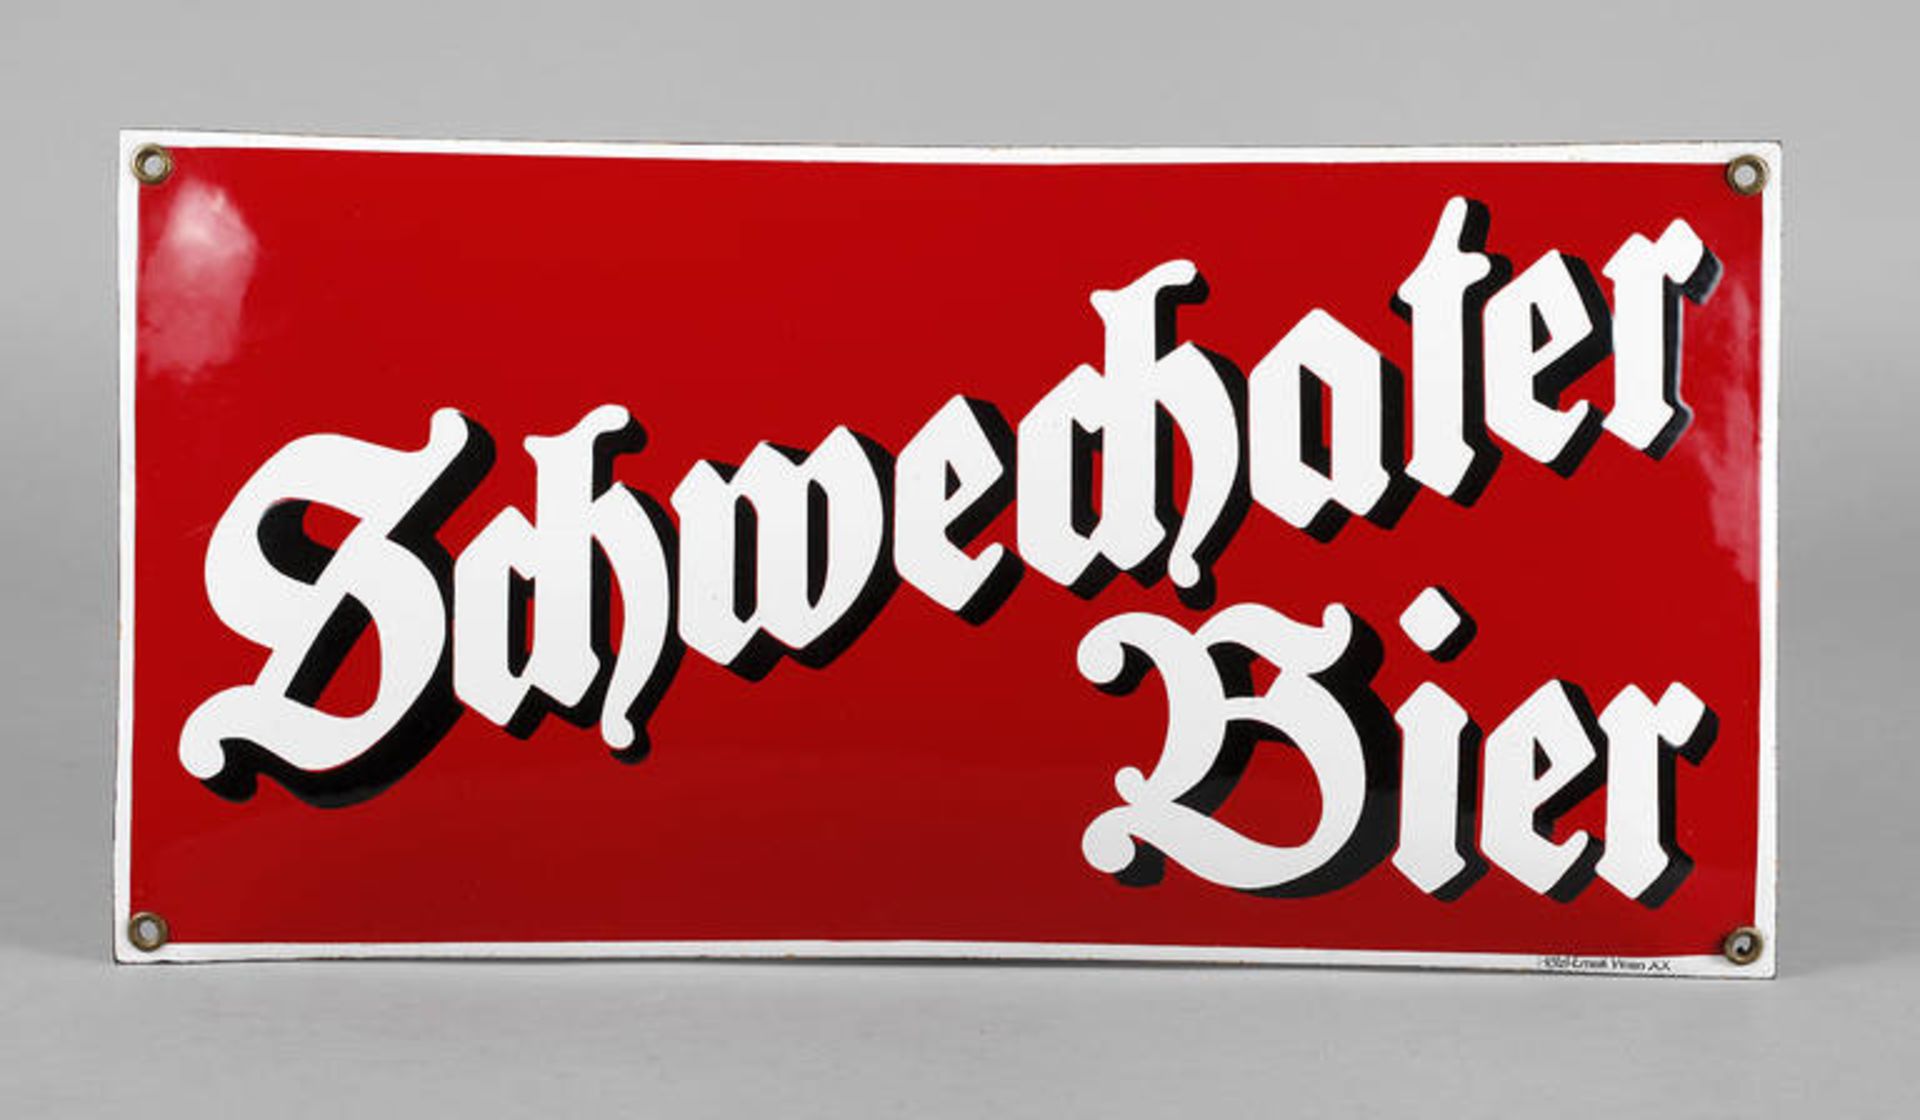 Emailleschild Schwechater Bier
Hölzl Email Wien, um 1930, gewölbtes Schild mit reliefierter Schrift,